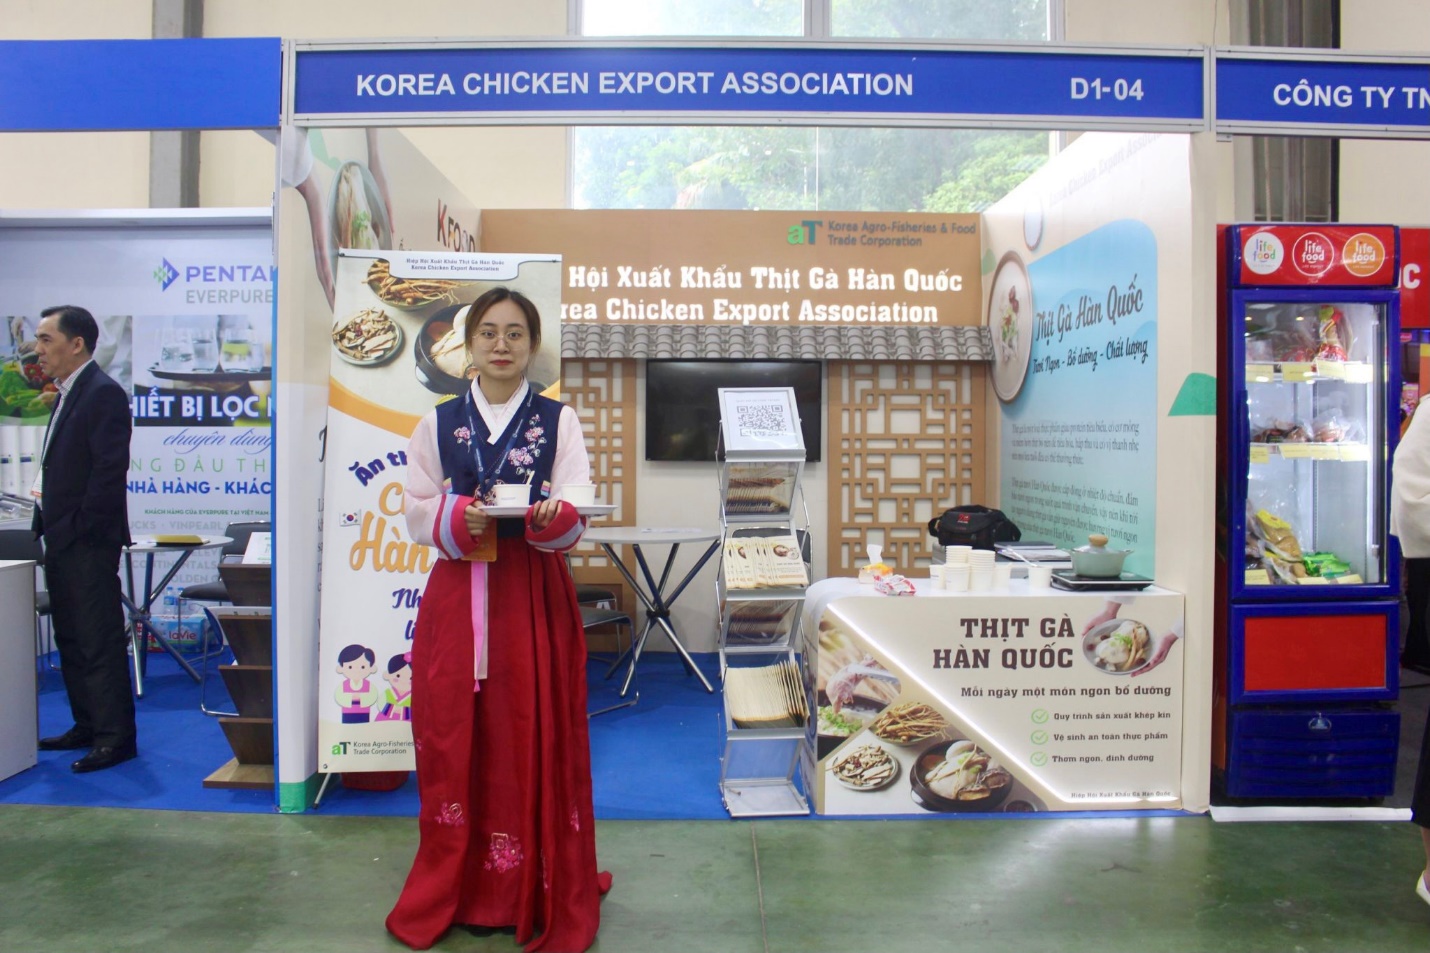 Gian trưng bày mang phong cách truyền thống Hàn Quốc của Hiệp Hội Xuất Khẩu Thịt Gà Hàn Quốc